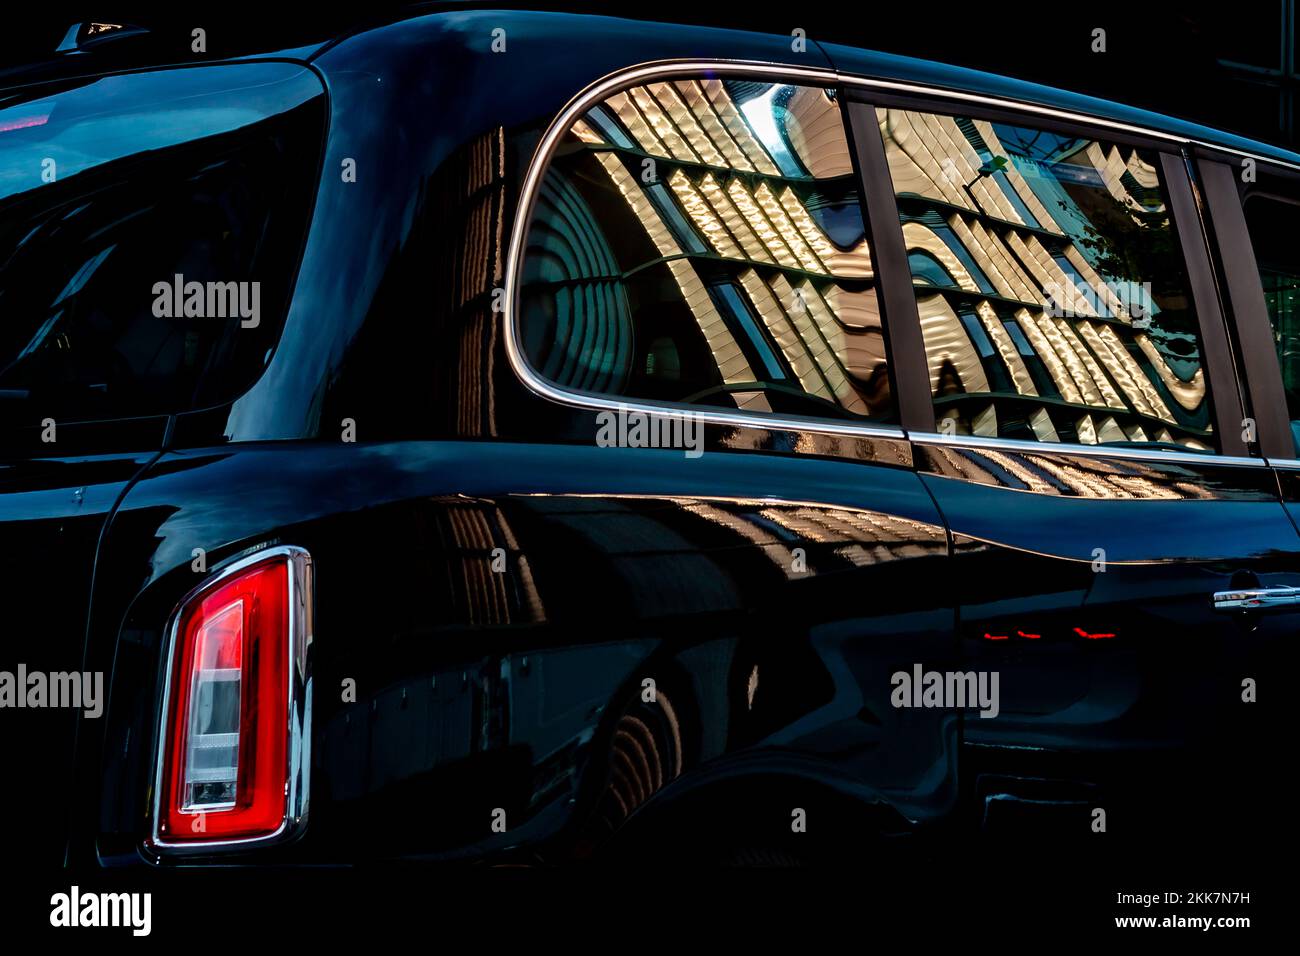 Une nouvelle cabine de taxi noire avec un nouveau bâtiment brillant qui se reflète dans sa carrosserie très polie.Ceci fait une image éditoriale attrayante.vue latérale. Banque D'Images